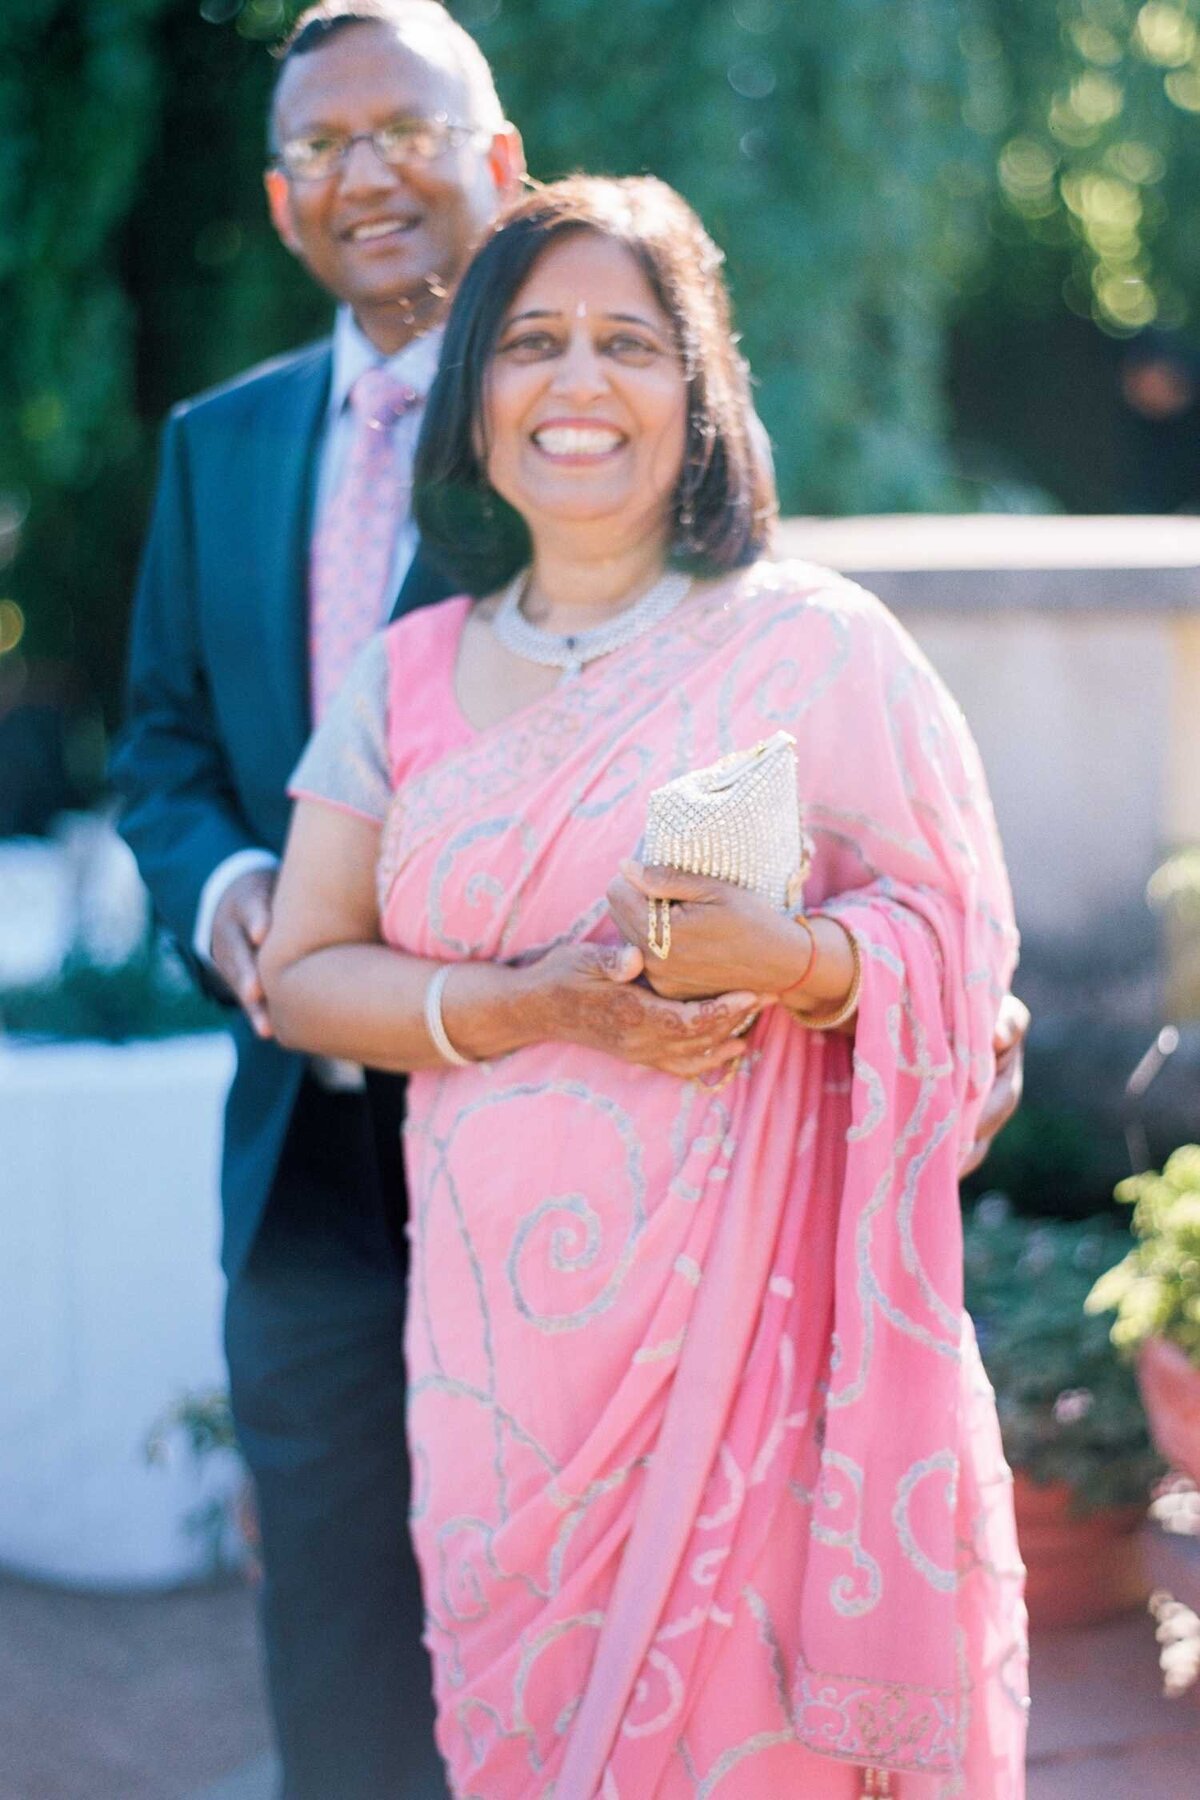 Indian Wedding Guests at Romantic Luxury Chicago North Shore Garden Wedding Venue